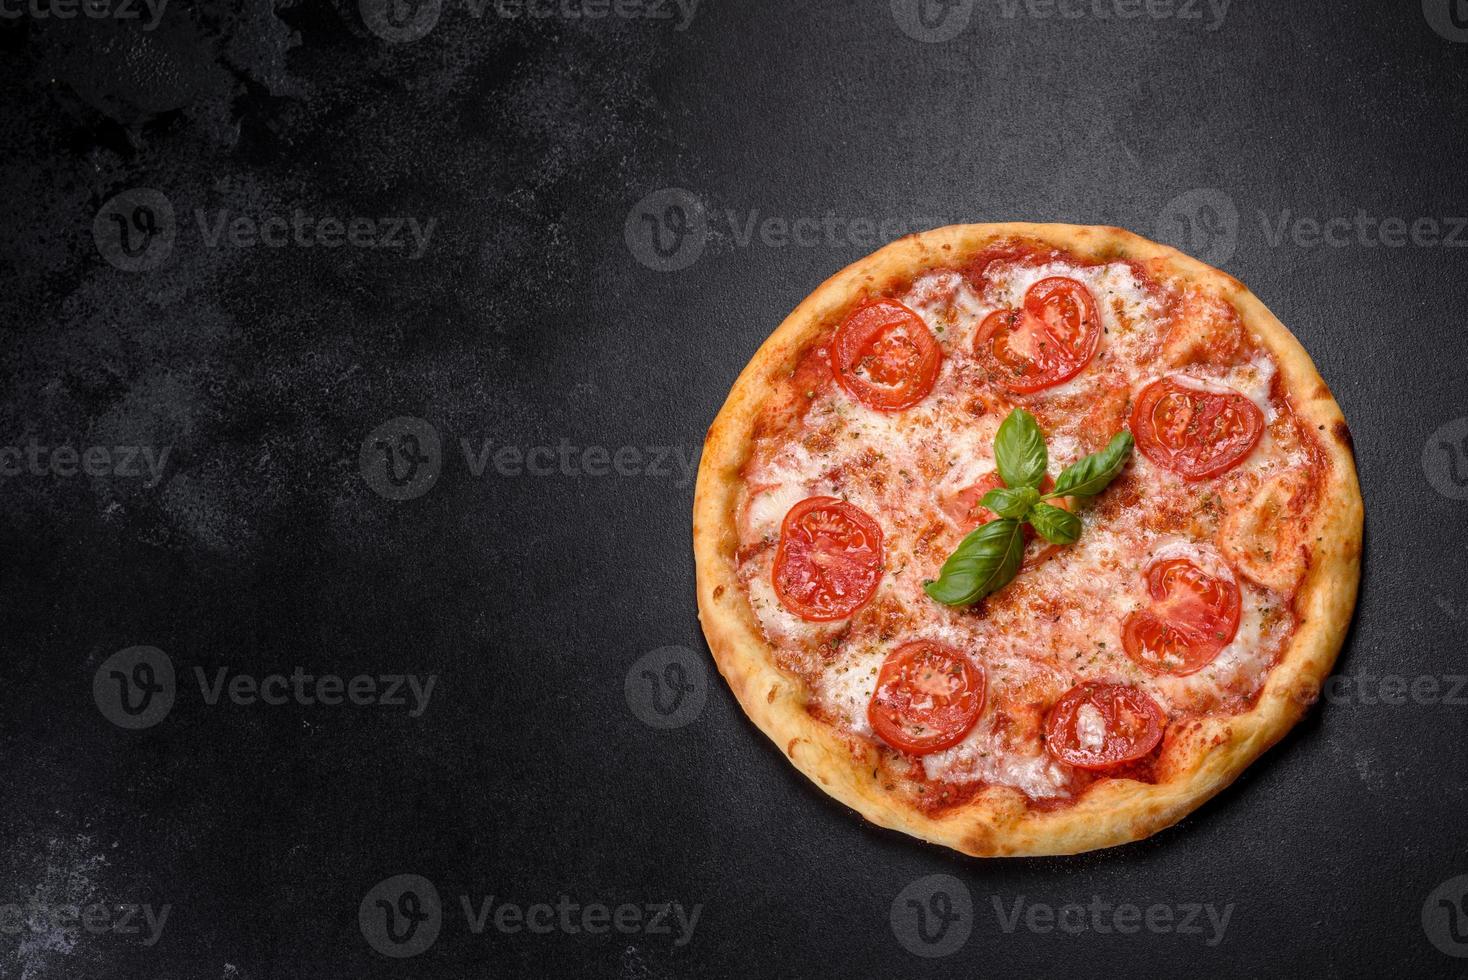 smakelijke verse ovenpizza met tomaten, kaas en basilicum op een betonnen ondergrond foto